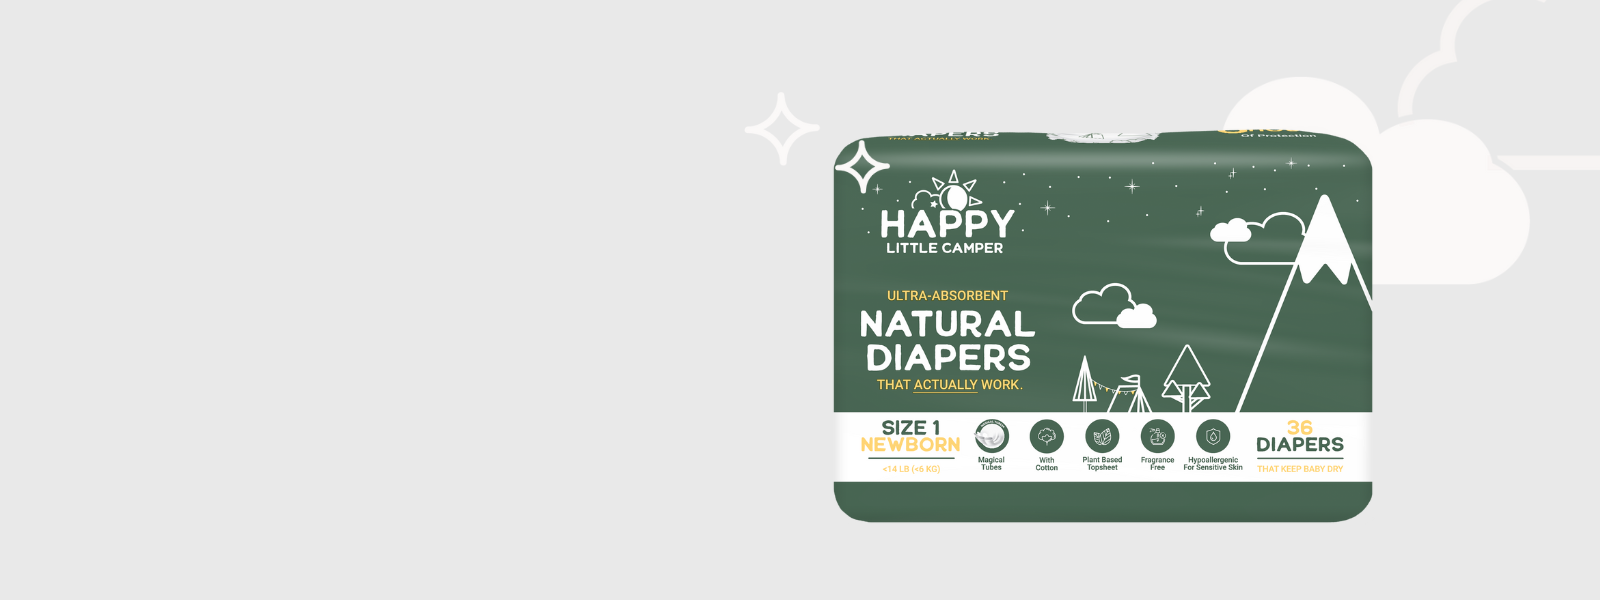 Happy Little Camper Pañales desechables naturales hipoalergénicos ultra  absorbentes, sin cloro, para piel sensible, recién nacido, talla 1, 36